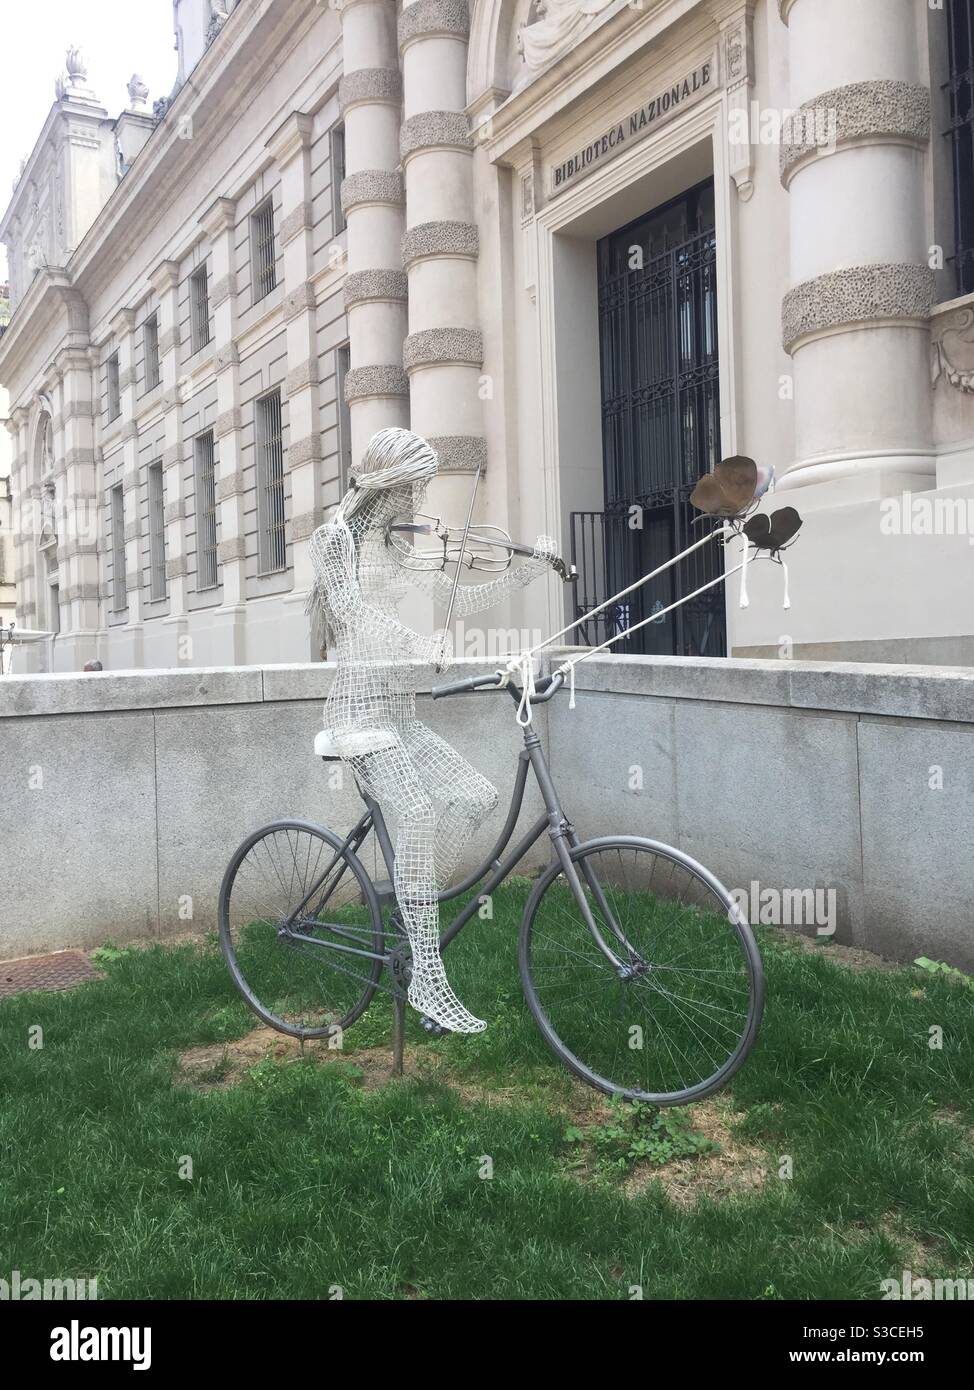 Belle sculpture de fer sur une femme avec de longs cheveux sur le vélo, à Turin, Italie Banque D'Images